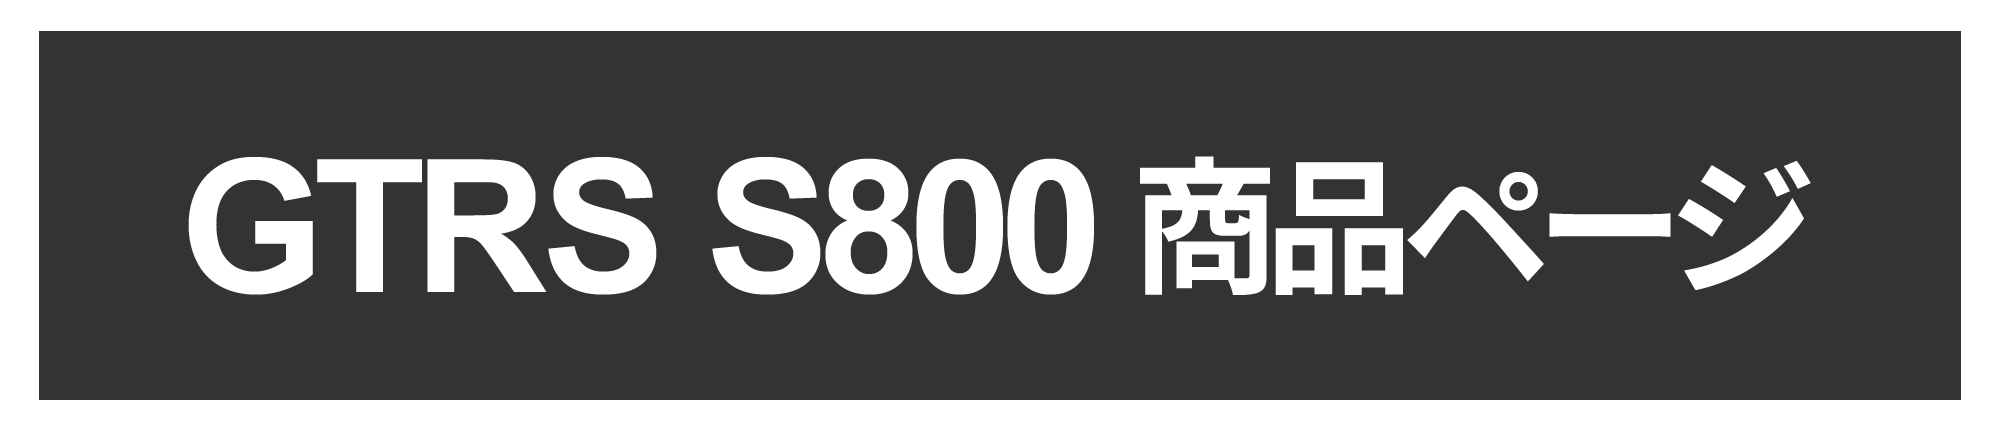 s800